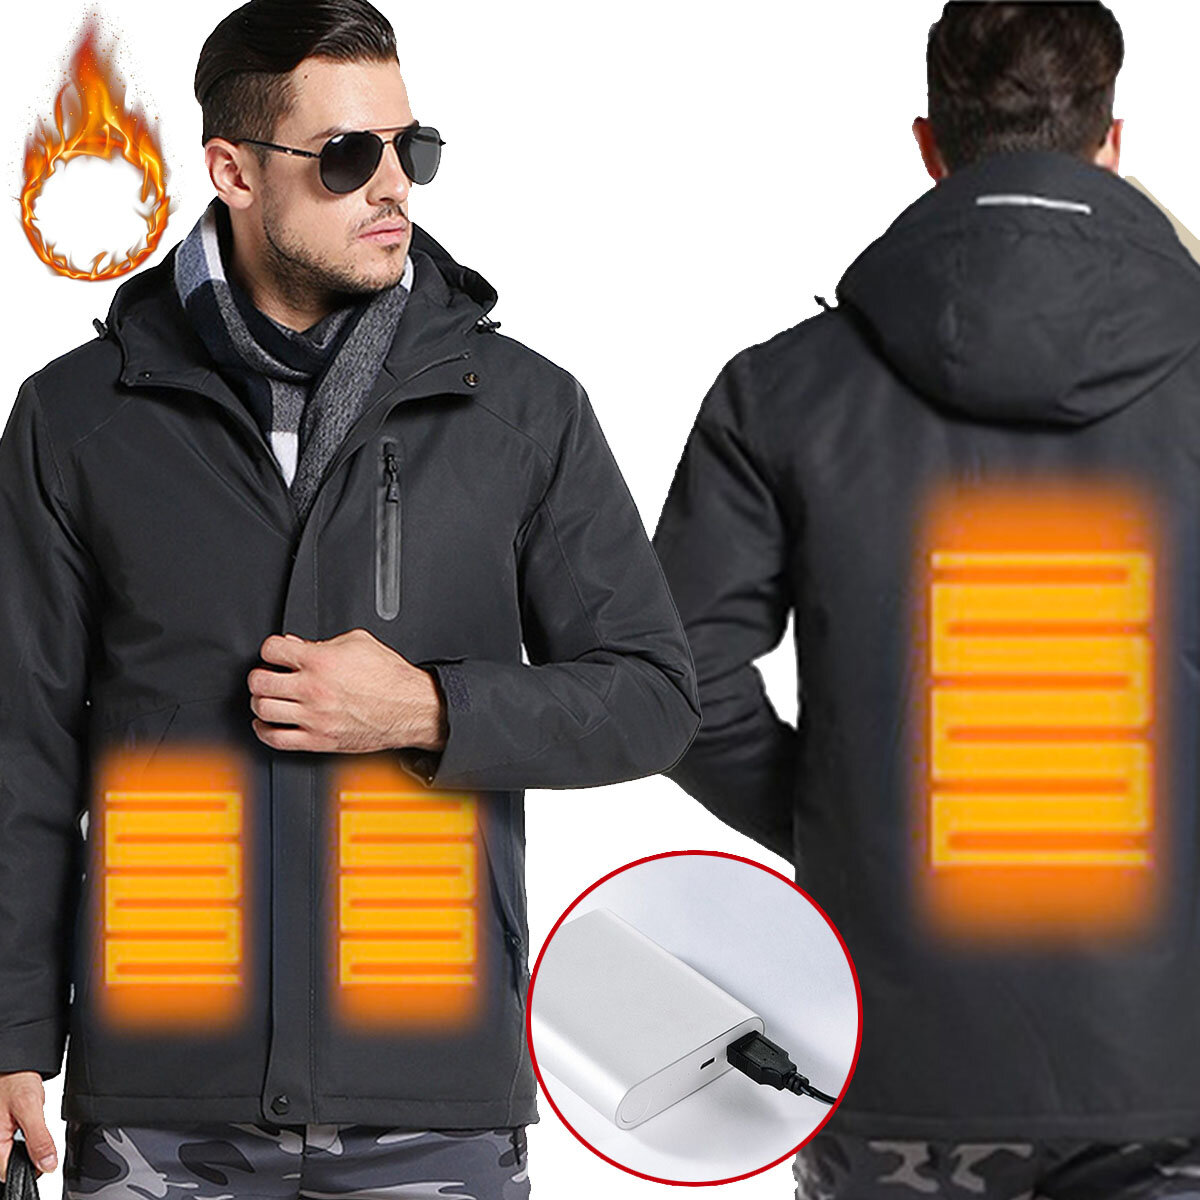 Ho una giacca elettrica riscaldata Tengoo Warm-E intelligente con riscaldamento USB regolabile, temperatura impermeabile e rivestimento da lavoro.